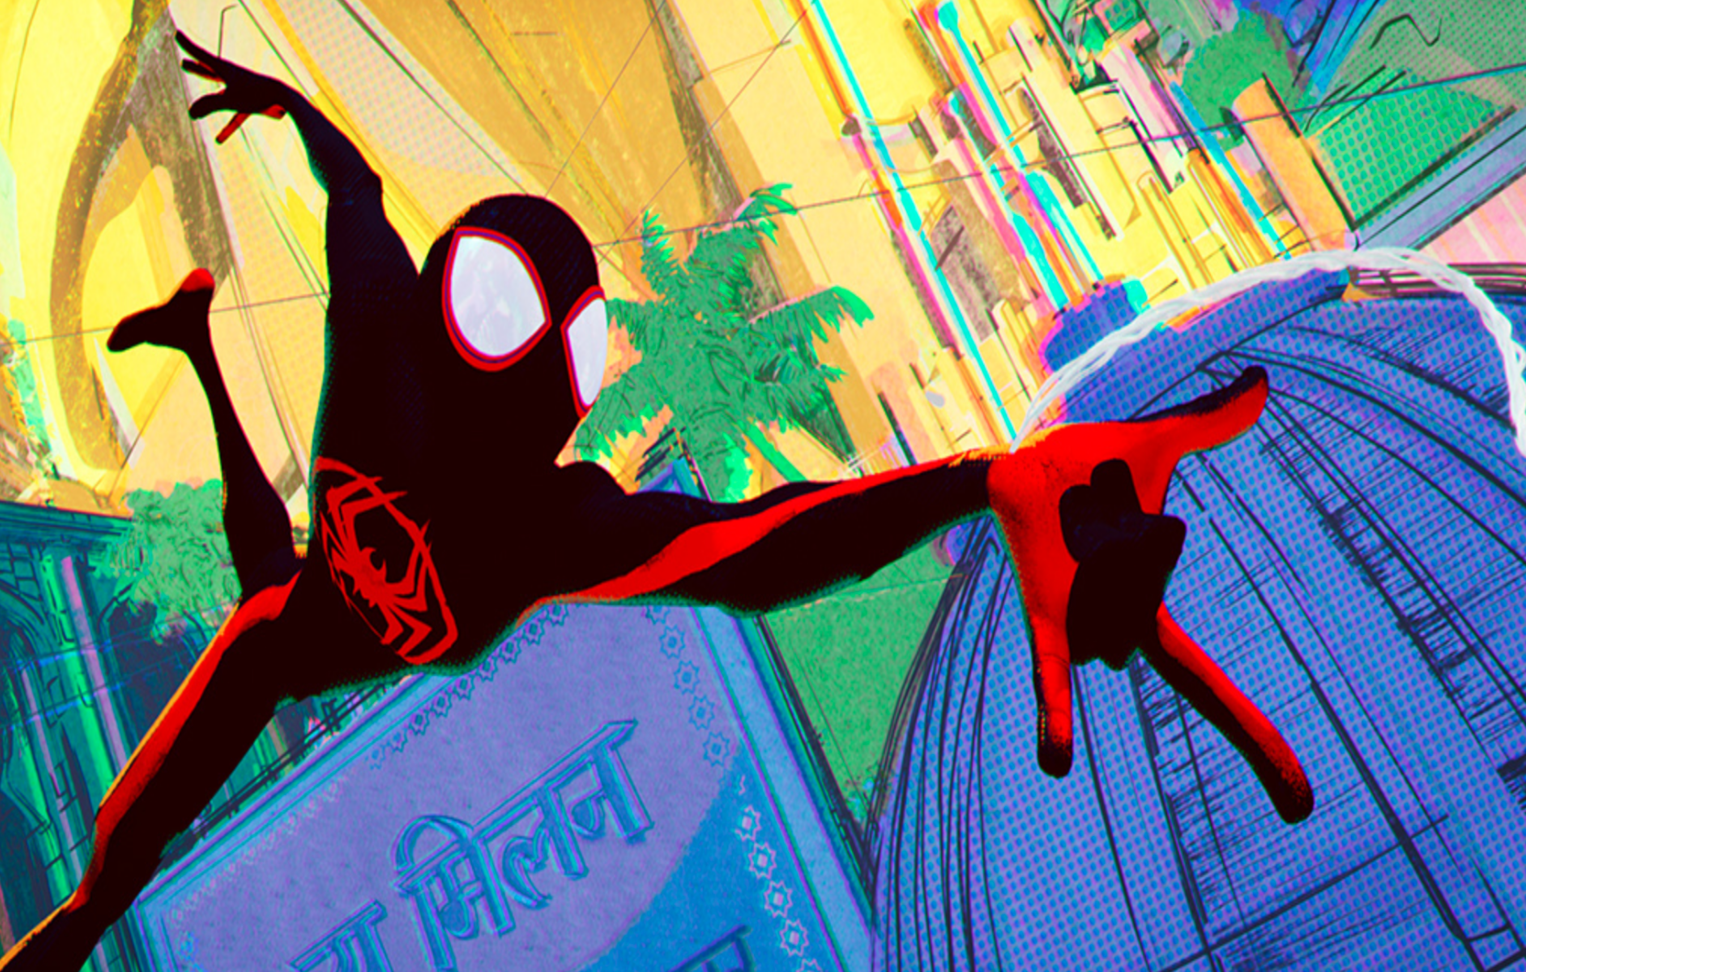 Spider-Gwen │ Marvel │ Spider-Verse